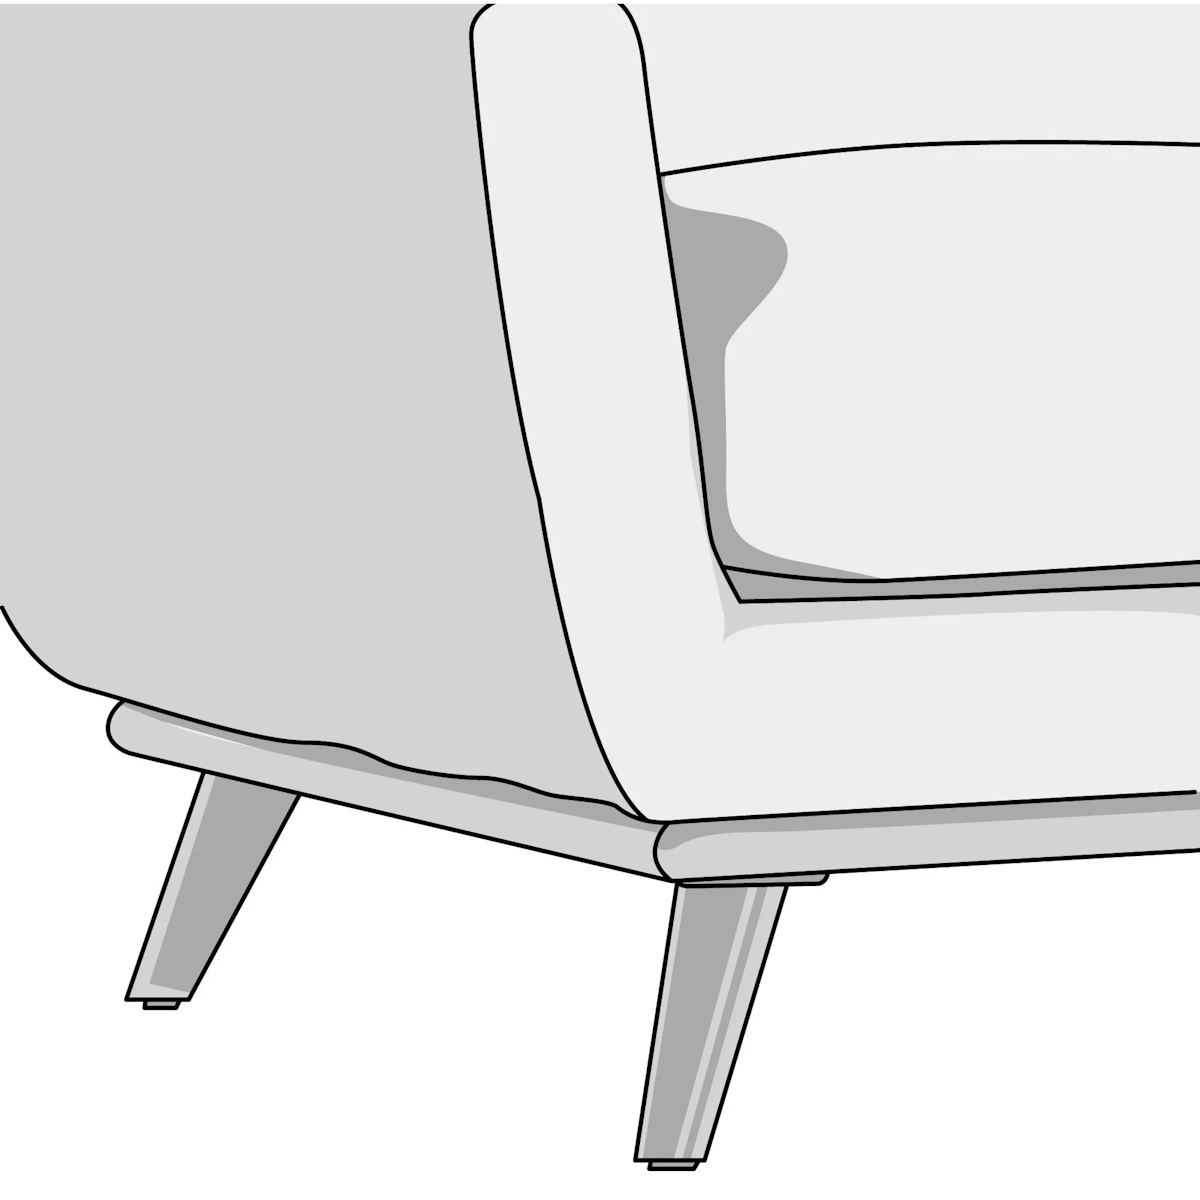 Illustration of splayed leg style sofa